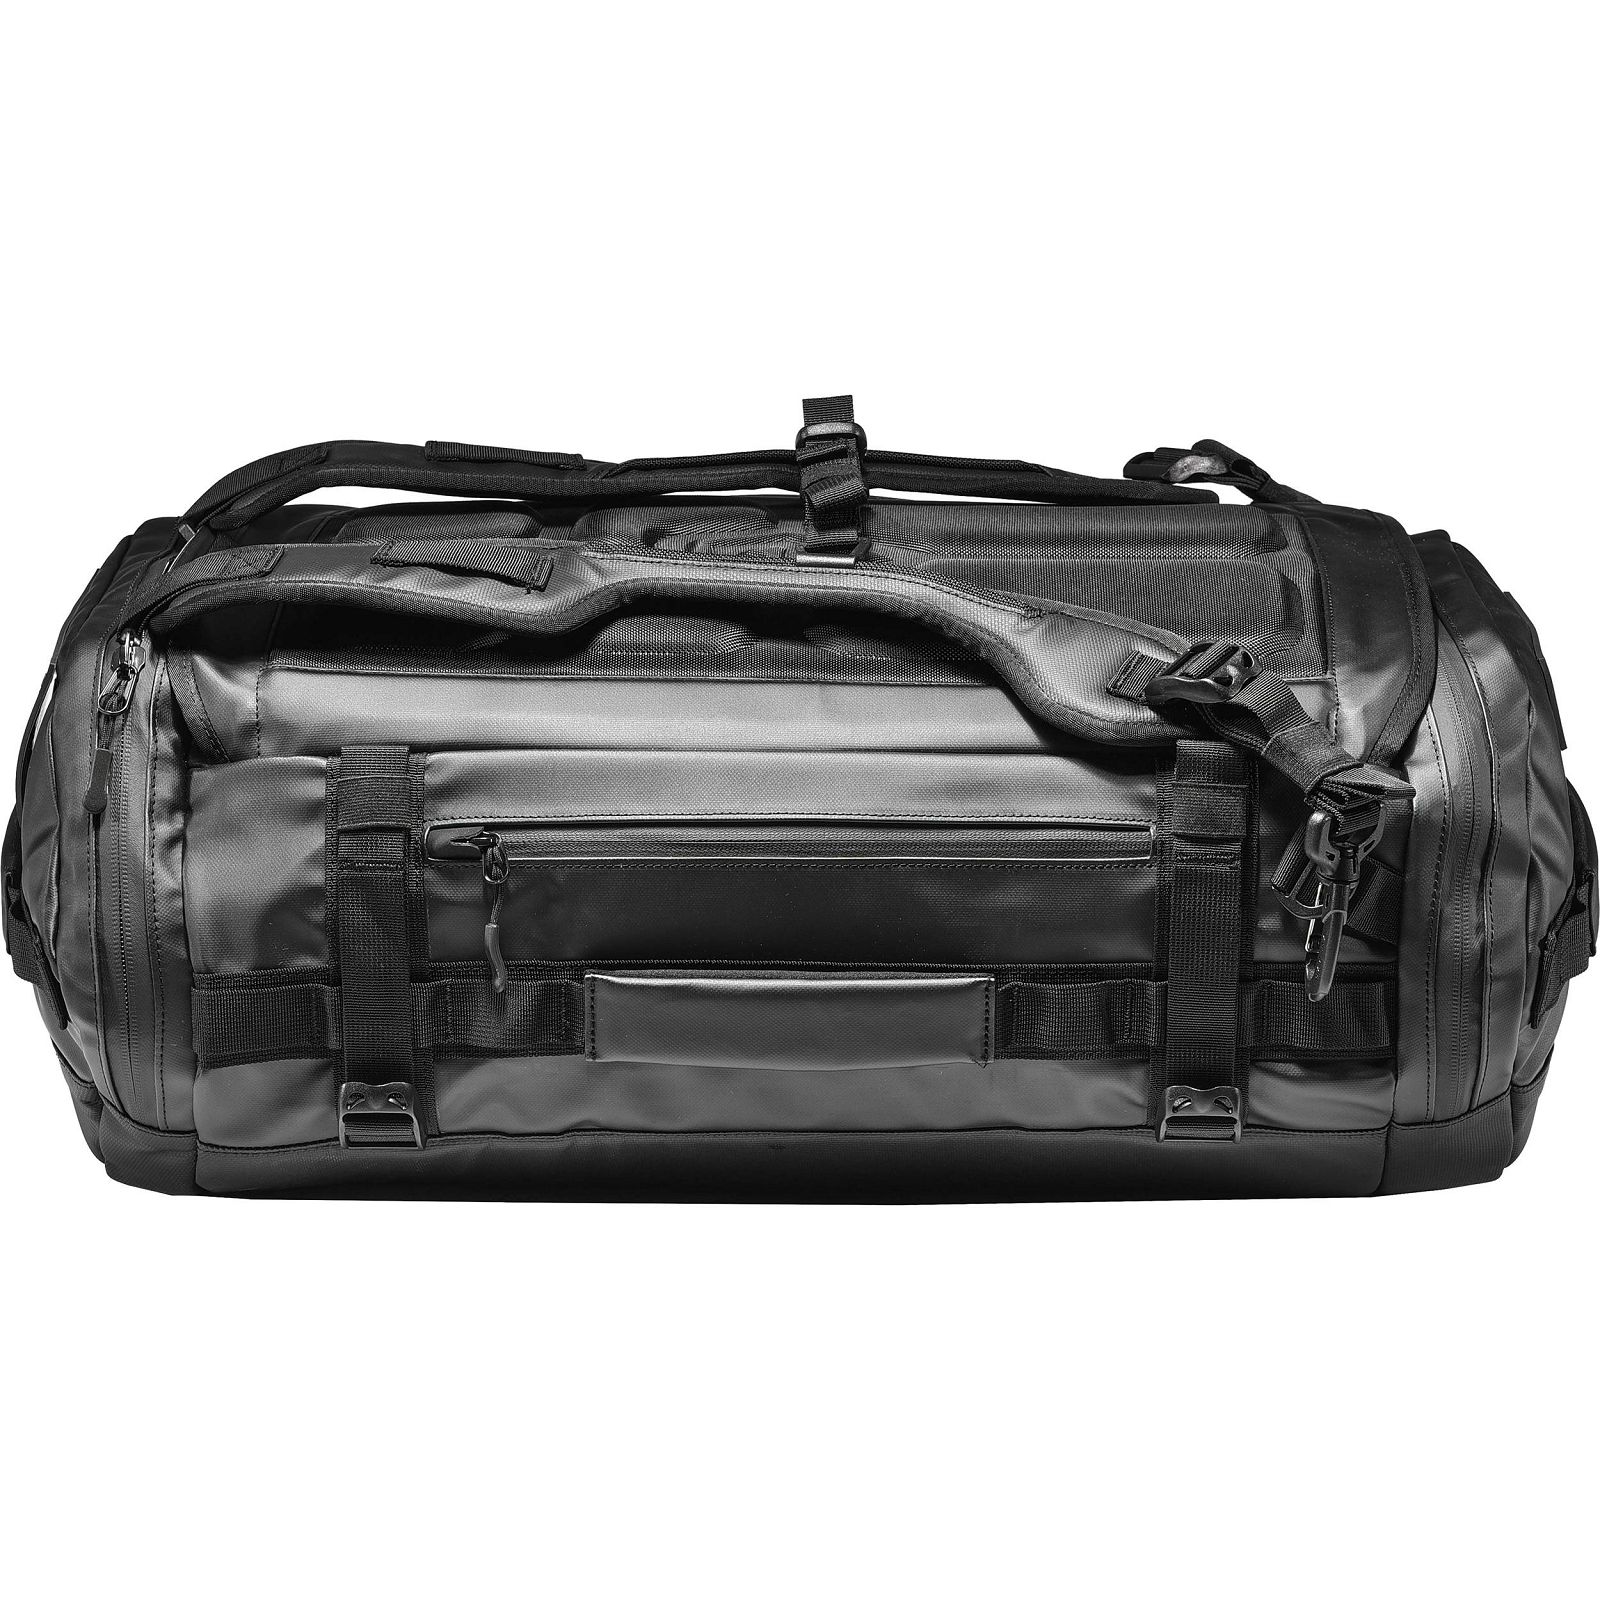 Wandrd Hexad Carryall Duffel 60l putni ruksak torba za foto opremu